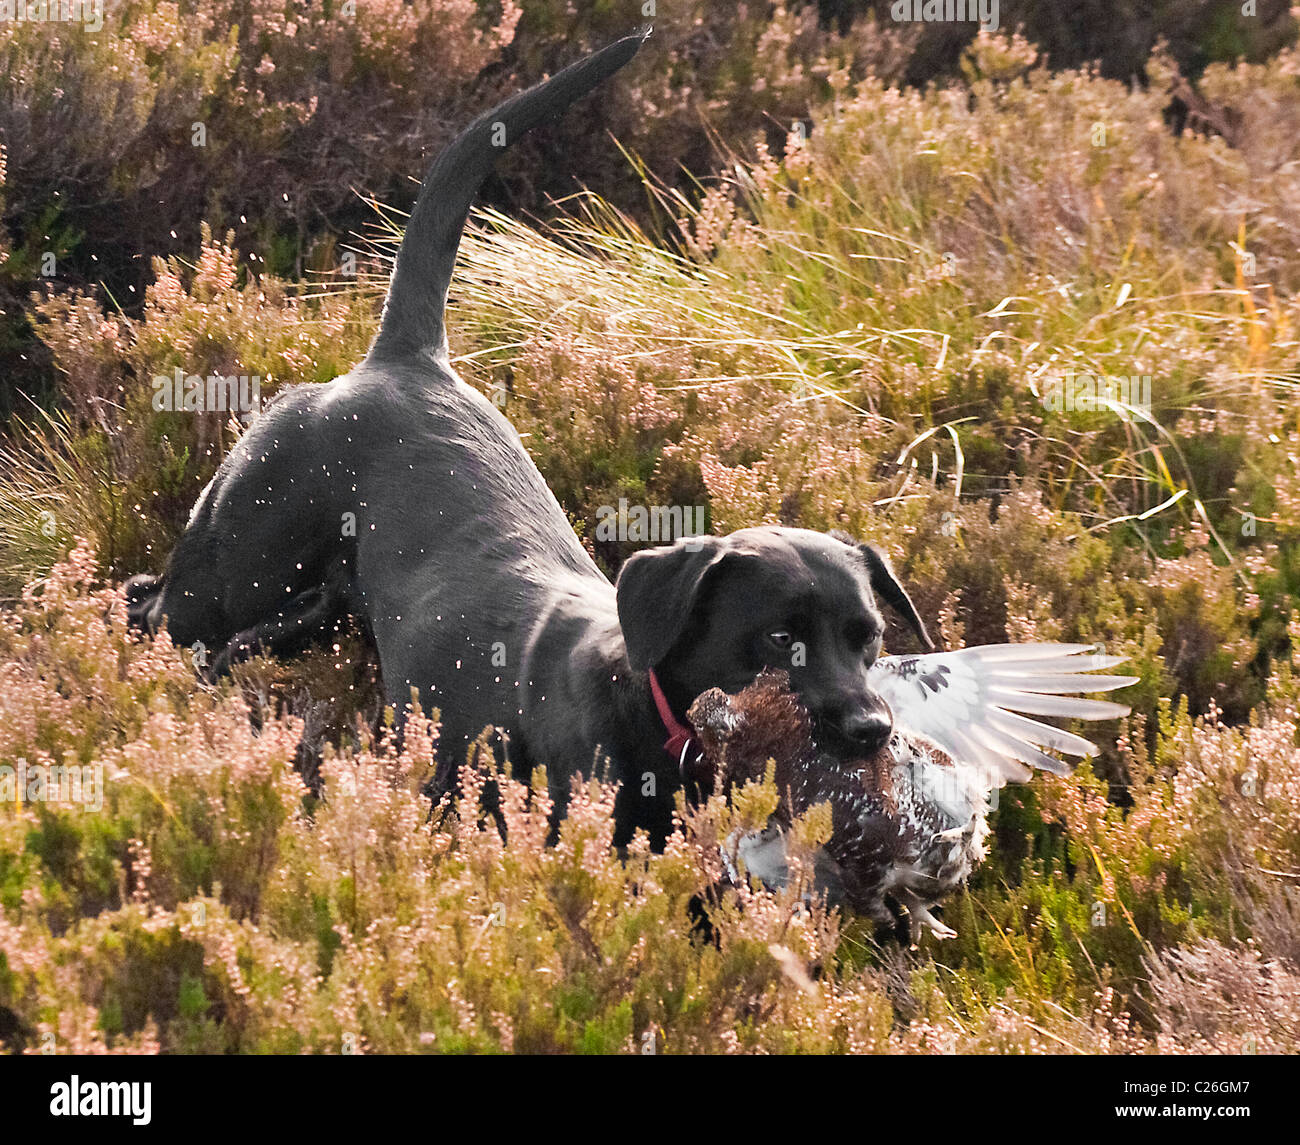 North Yorkshire, England, UK-schwarzer Labrador Hund Abrufen einer Klage, die auf einem grouse Moor gefahren Schießen geschossen wurde. Stockfoto